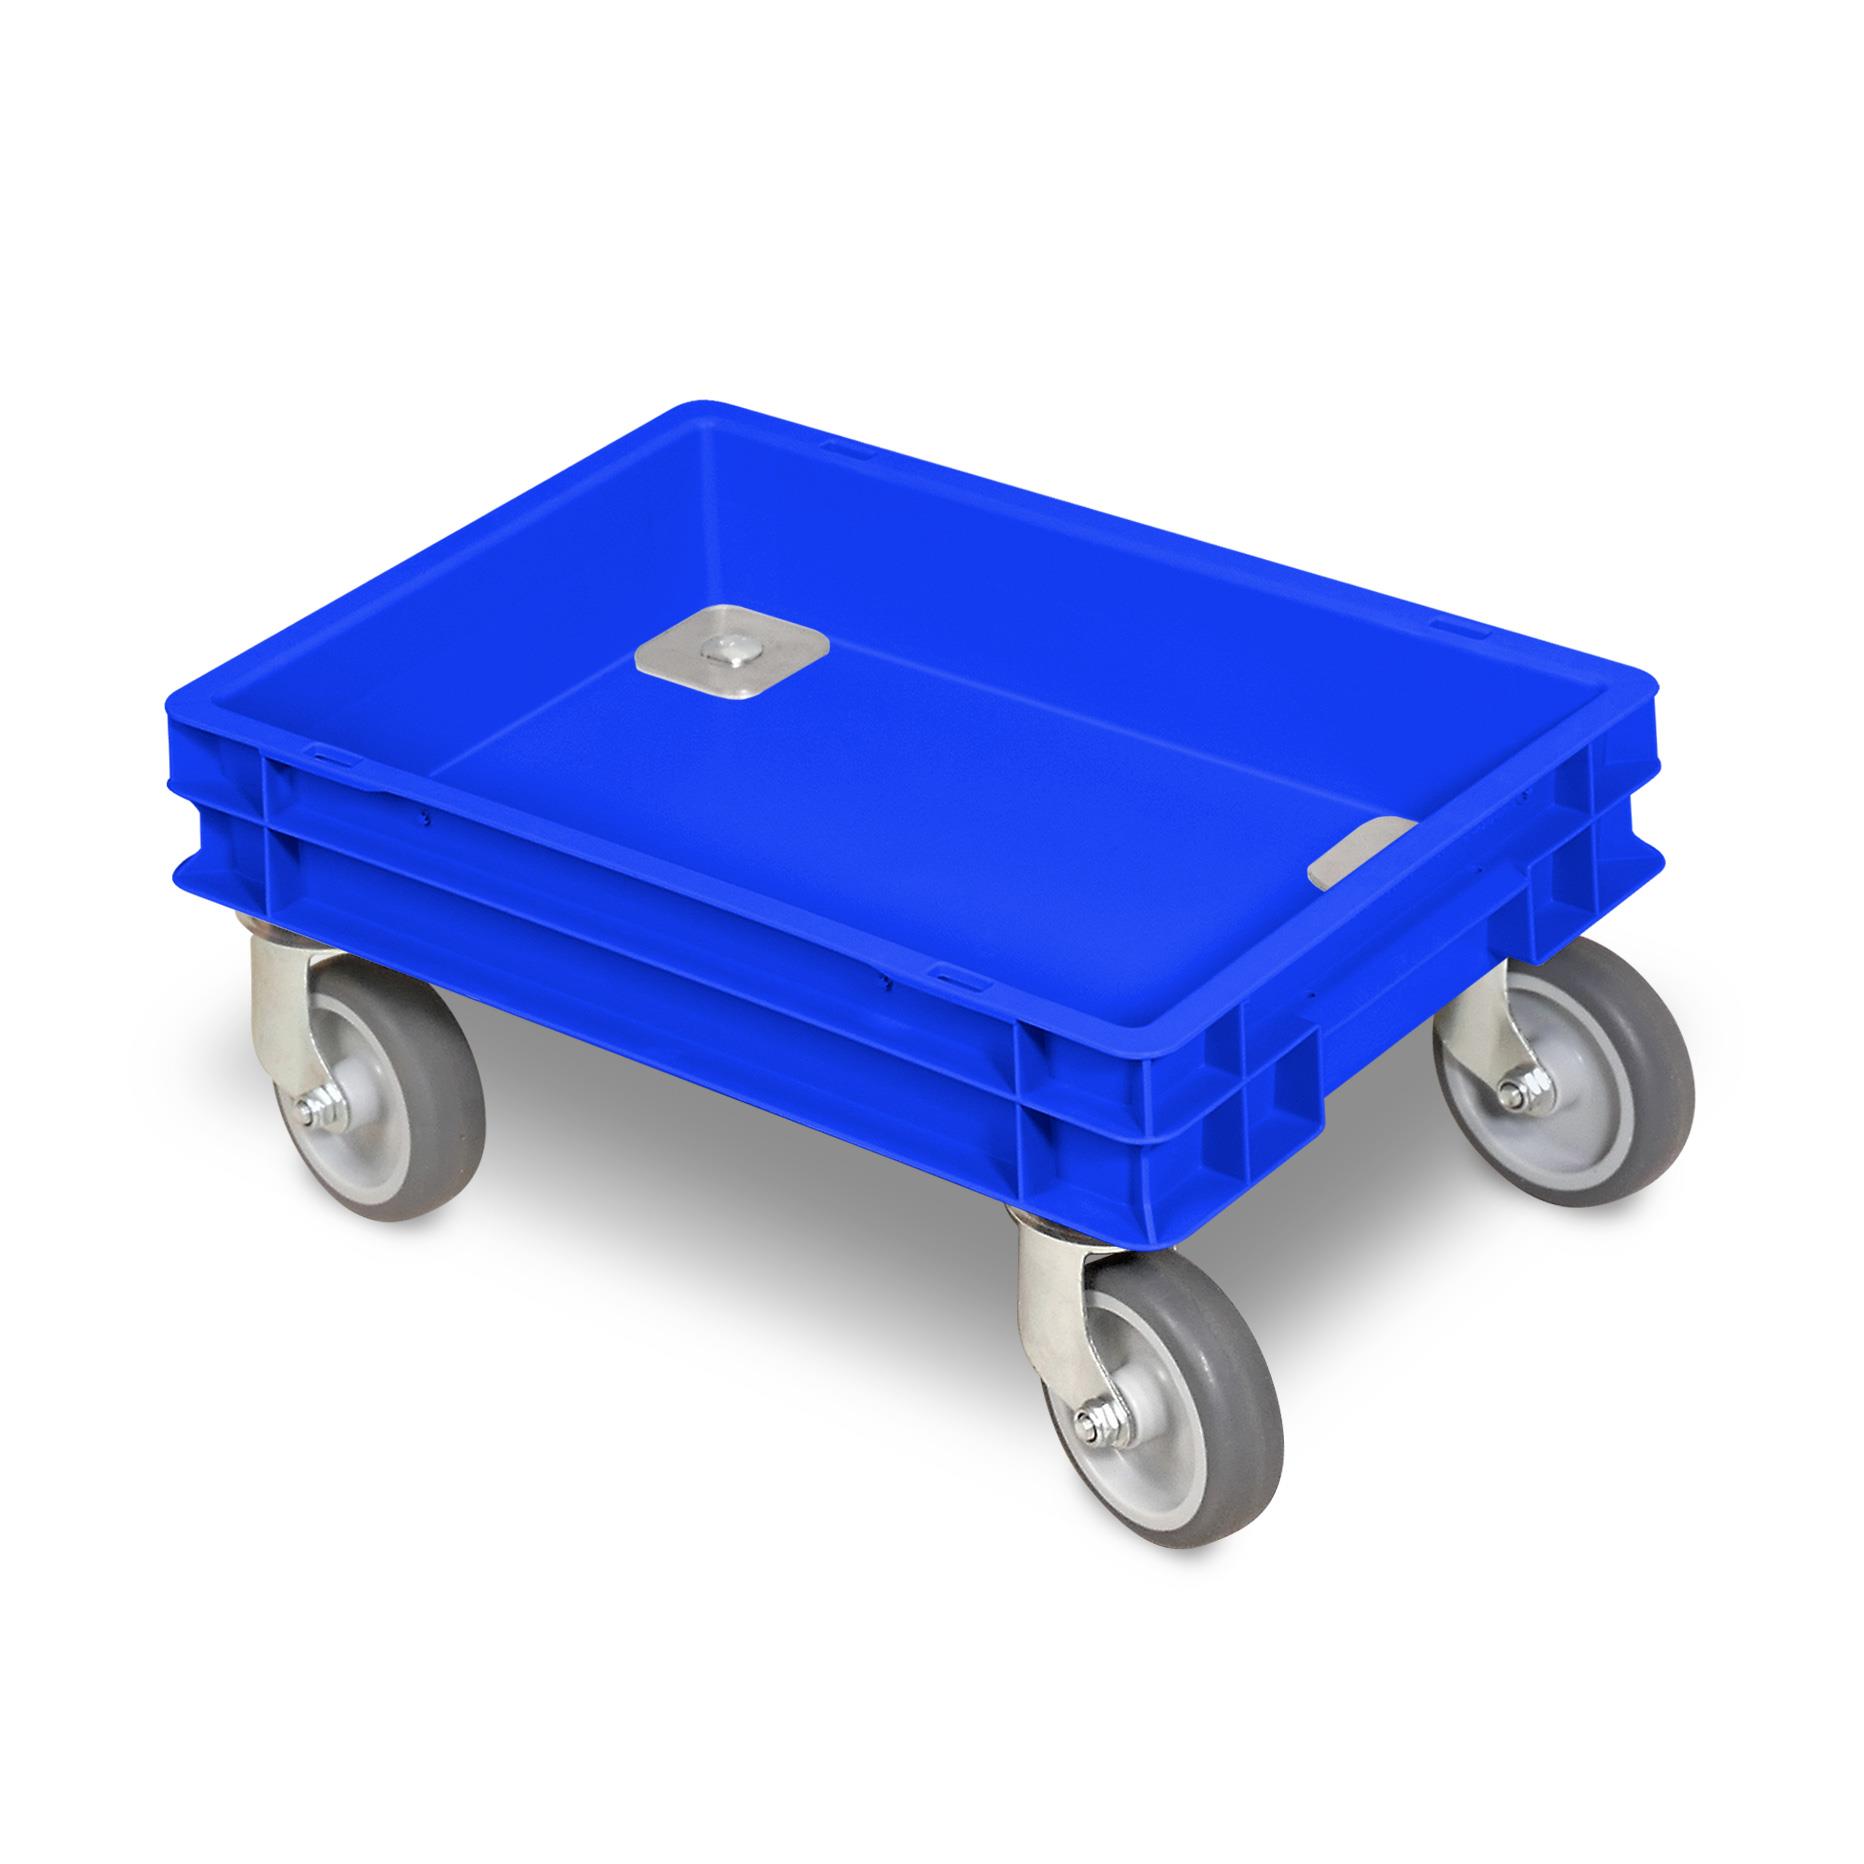 Rollkasten mit 4 Lenkrollen für 400x300mm Eurobehälter, graue Gummiräder, Tragkraft 100 kg, blau